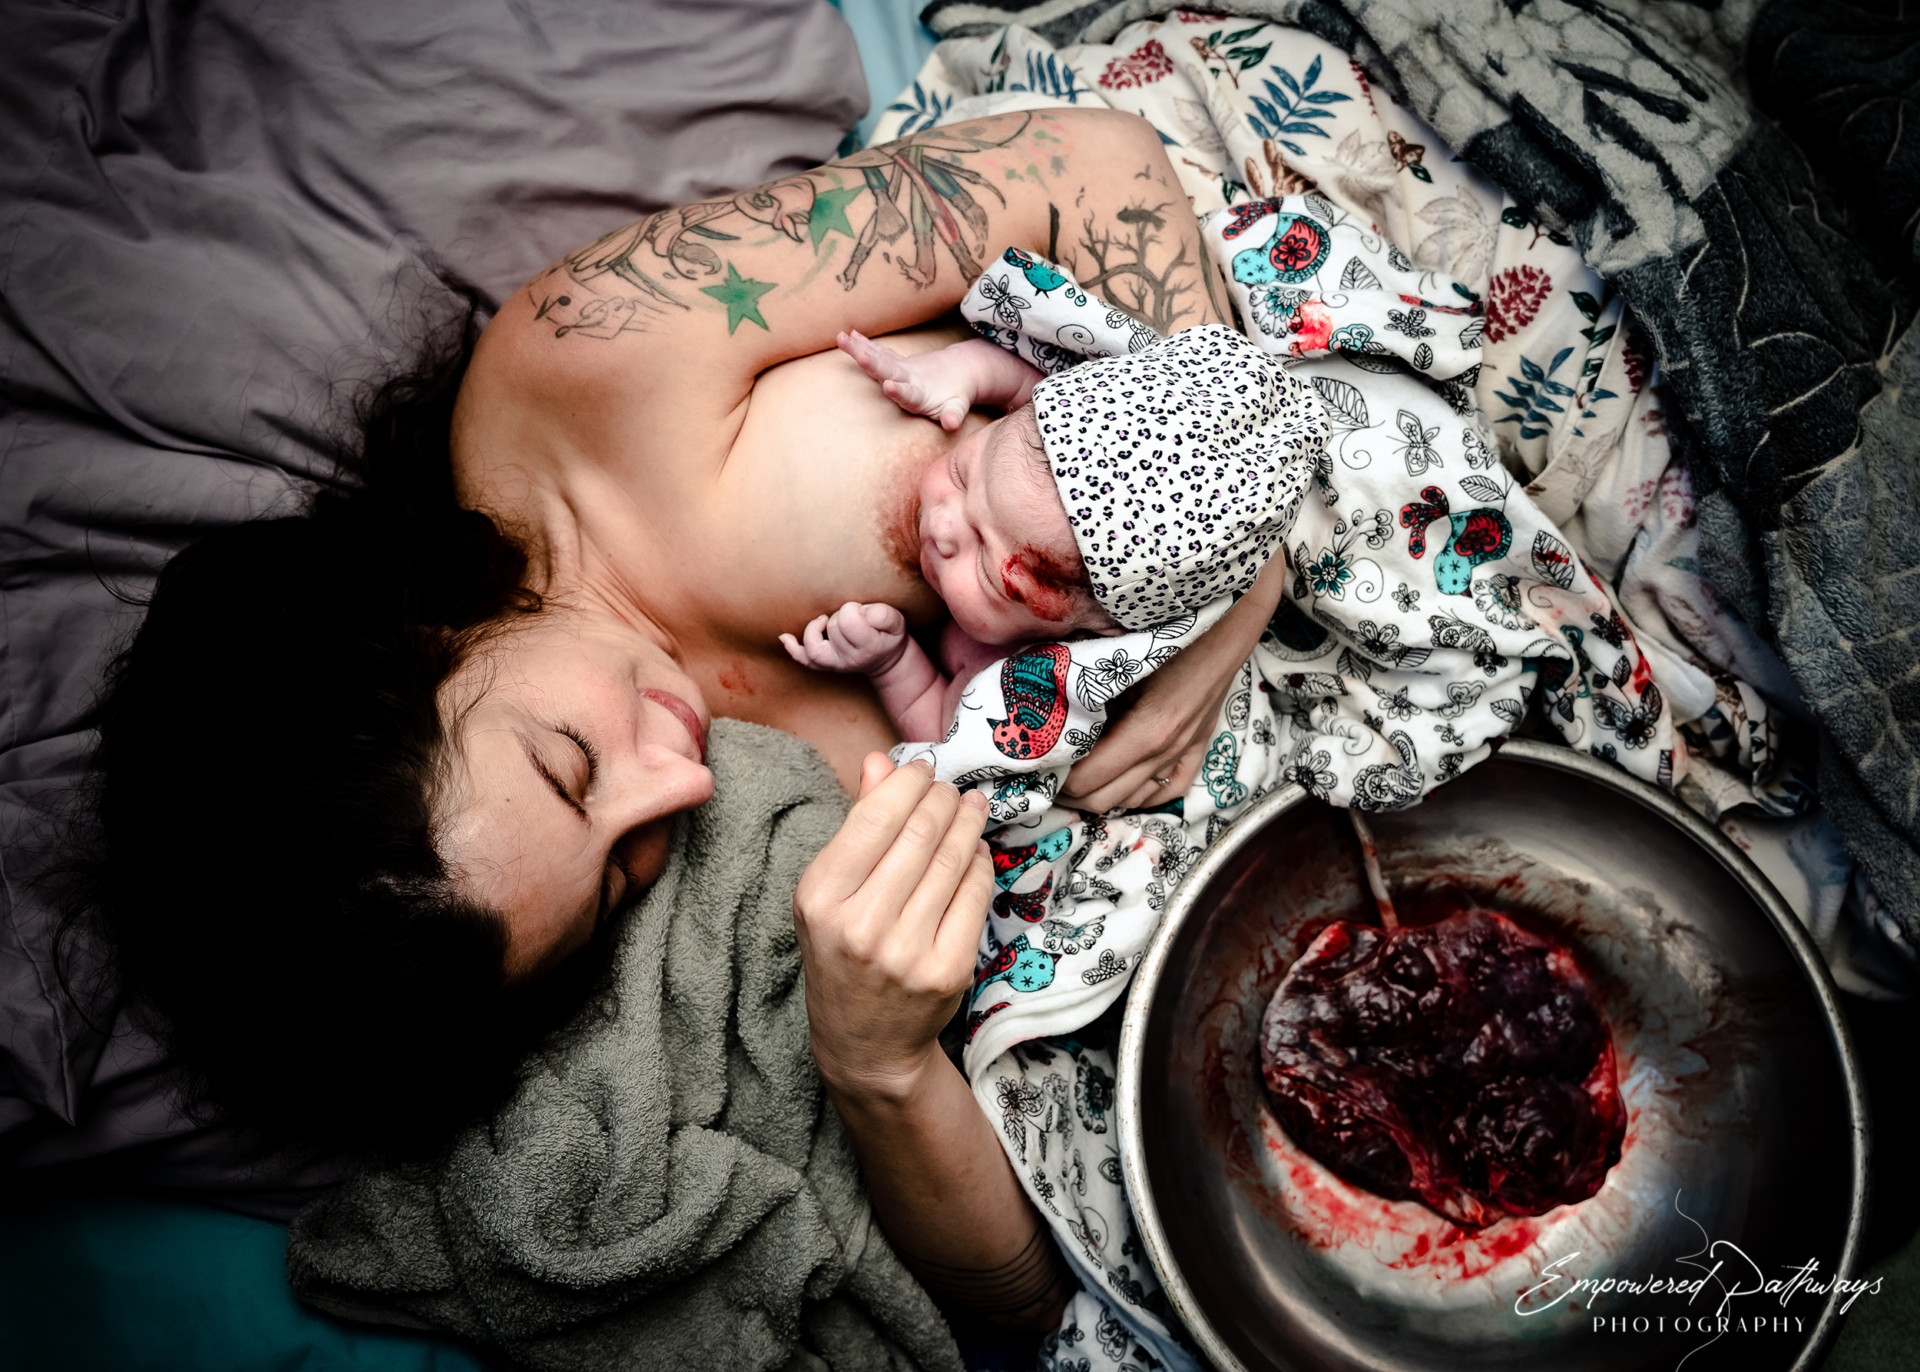 Une femme allongée dans un lit avec le placenta dans un bol à côté d'elle, allaite son nouveau-né